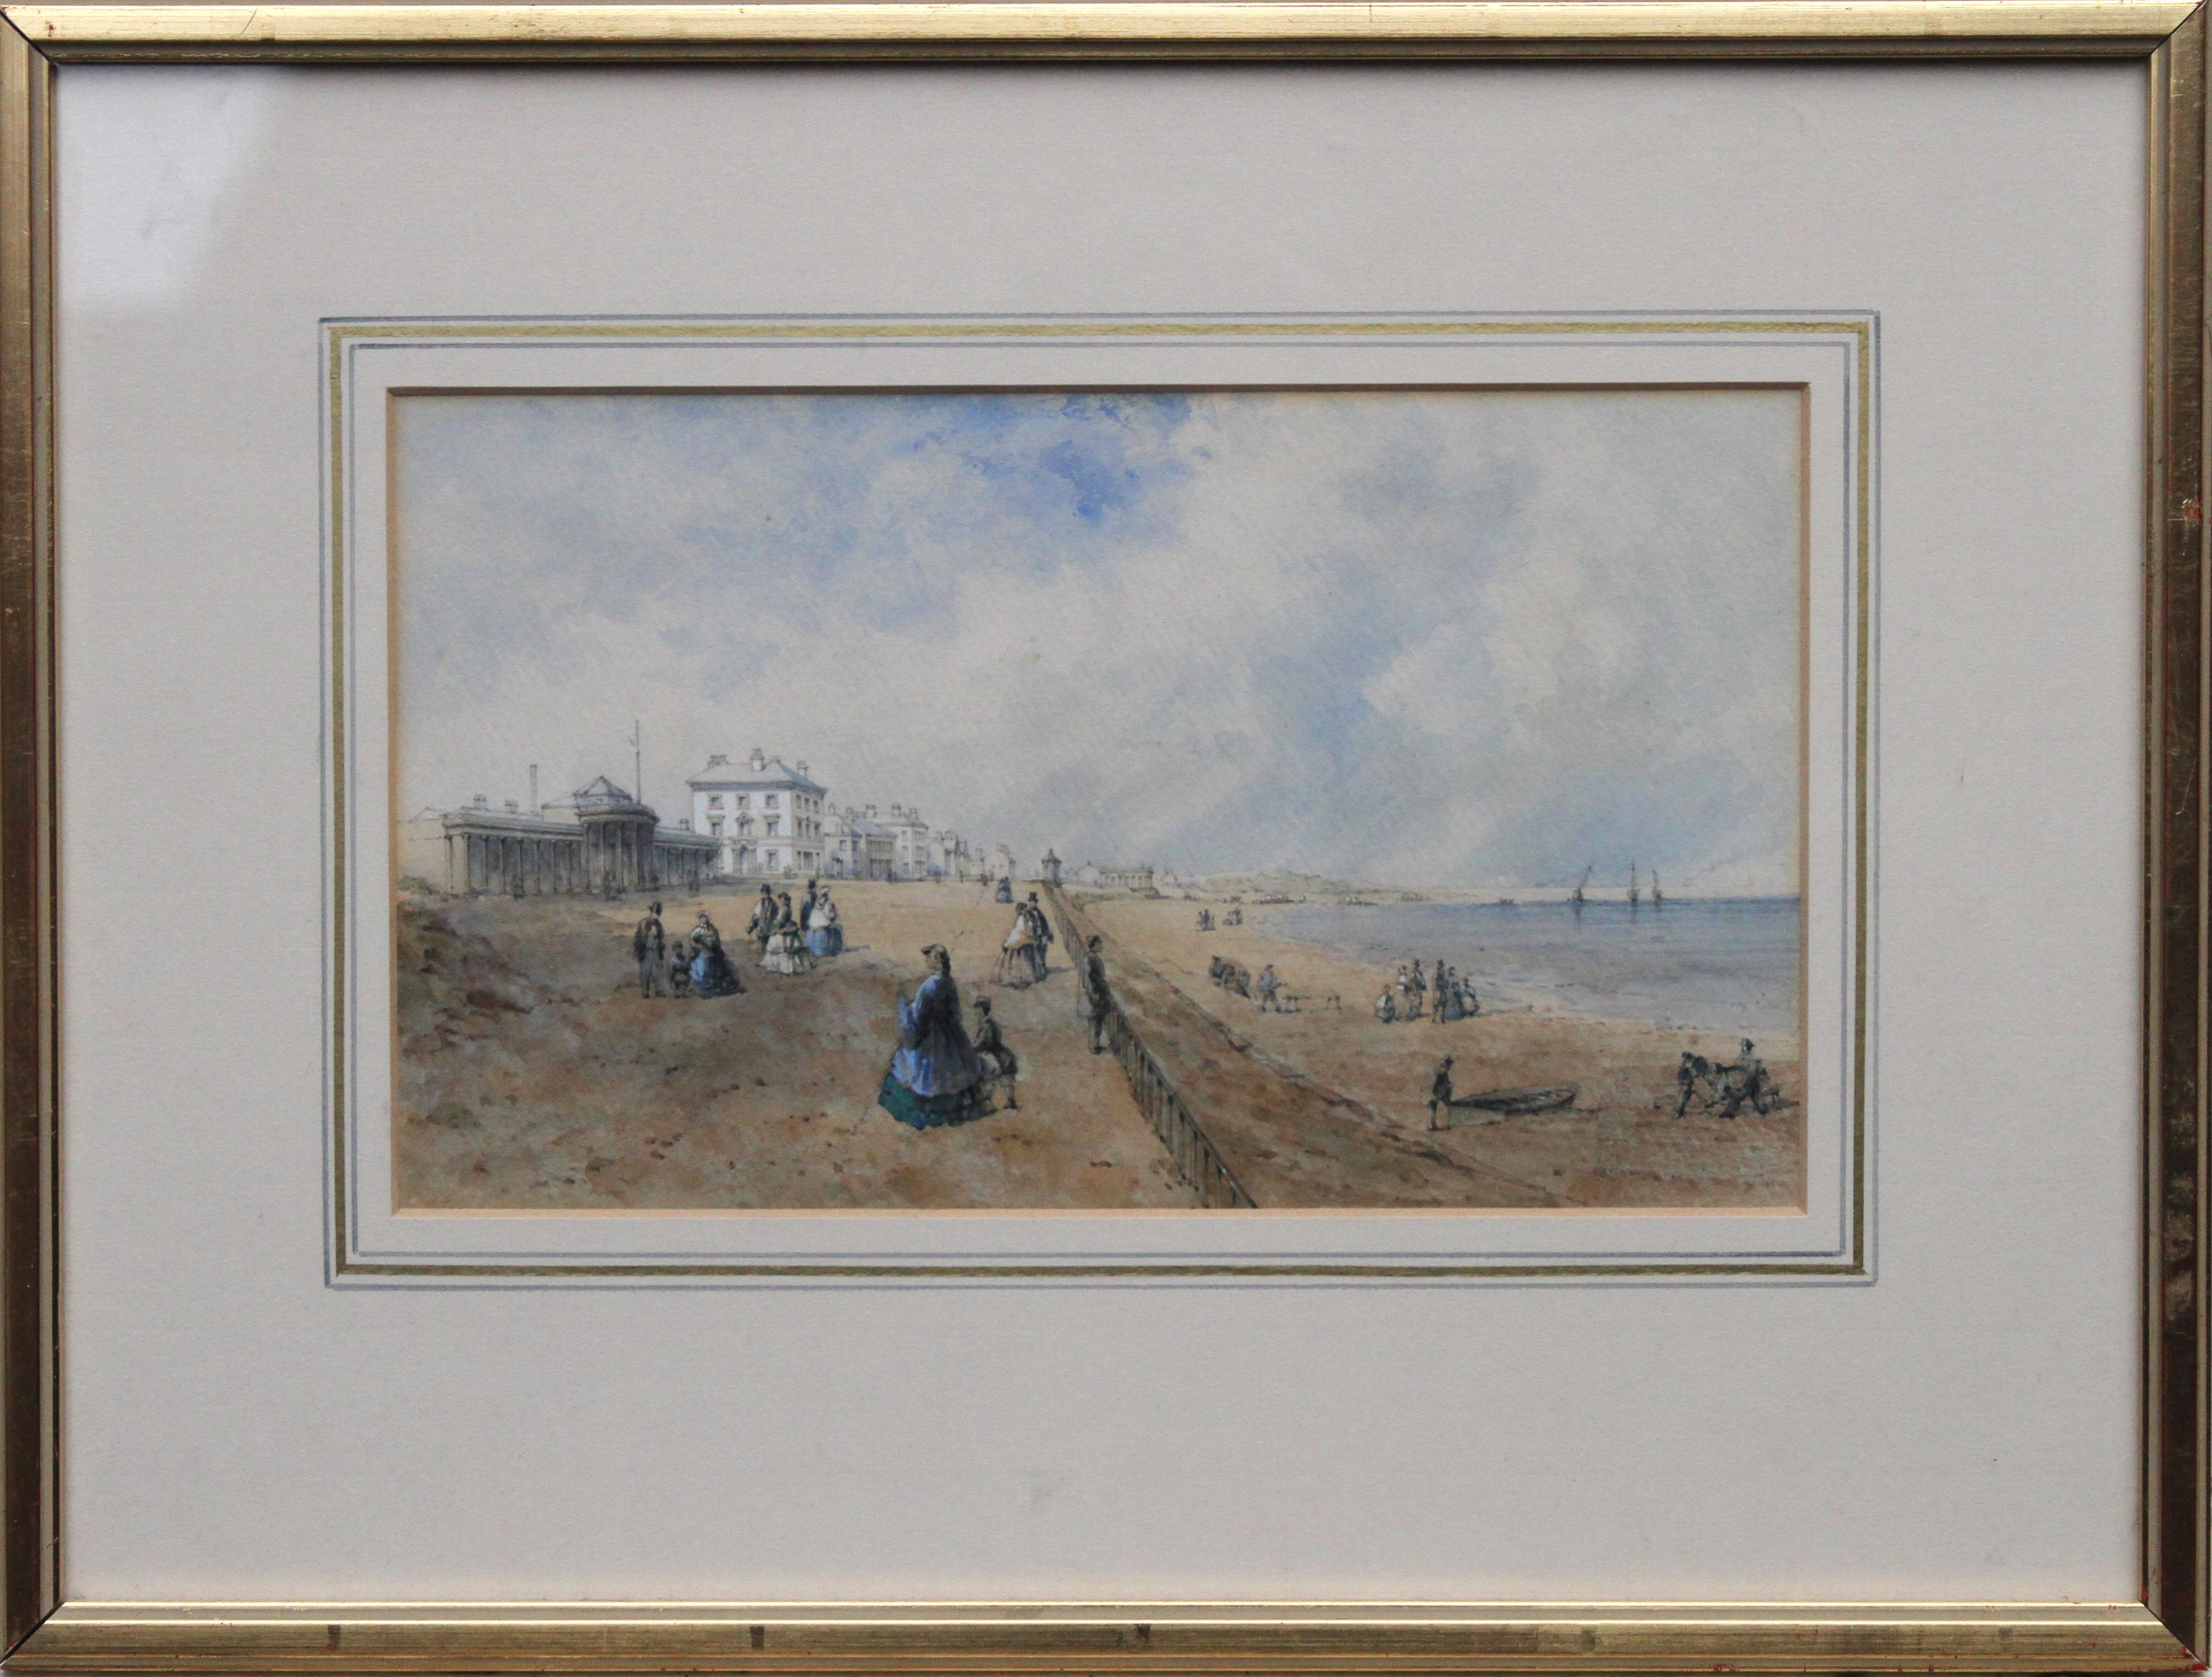 Promenade at Southport - British 19th century art coastal landscape watercolour For Sale 7